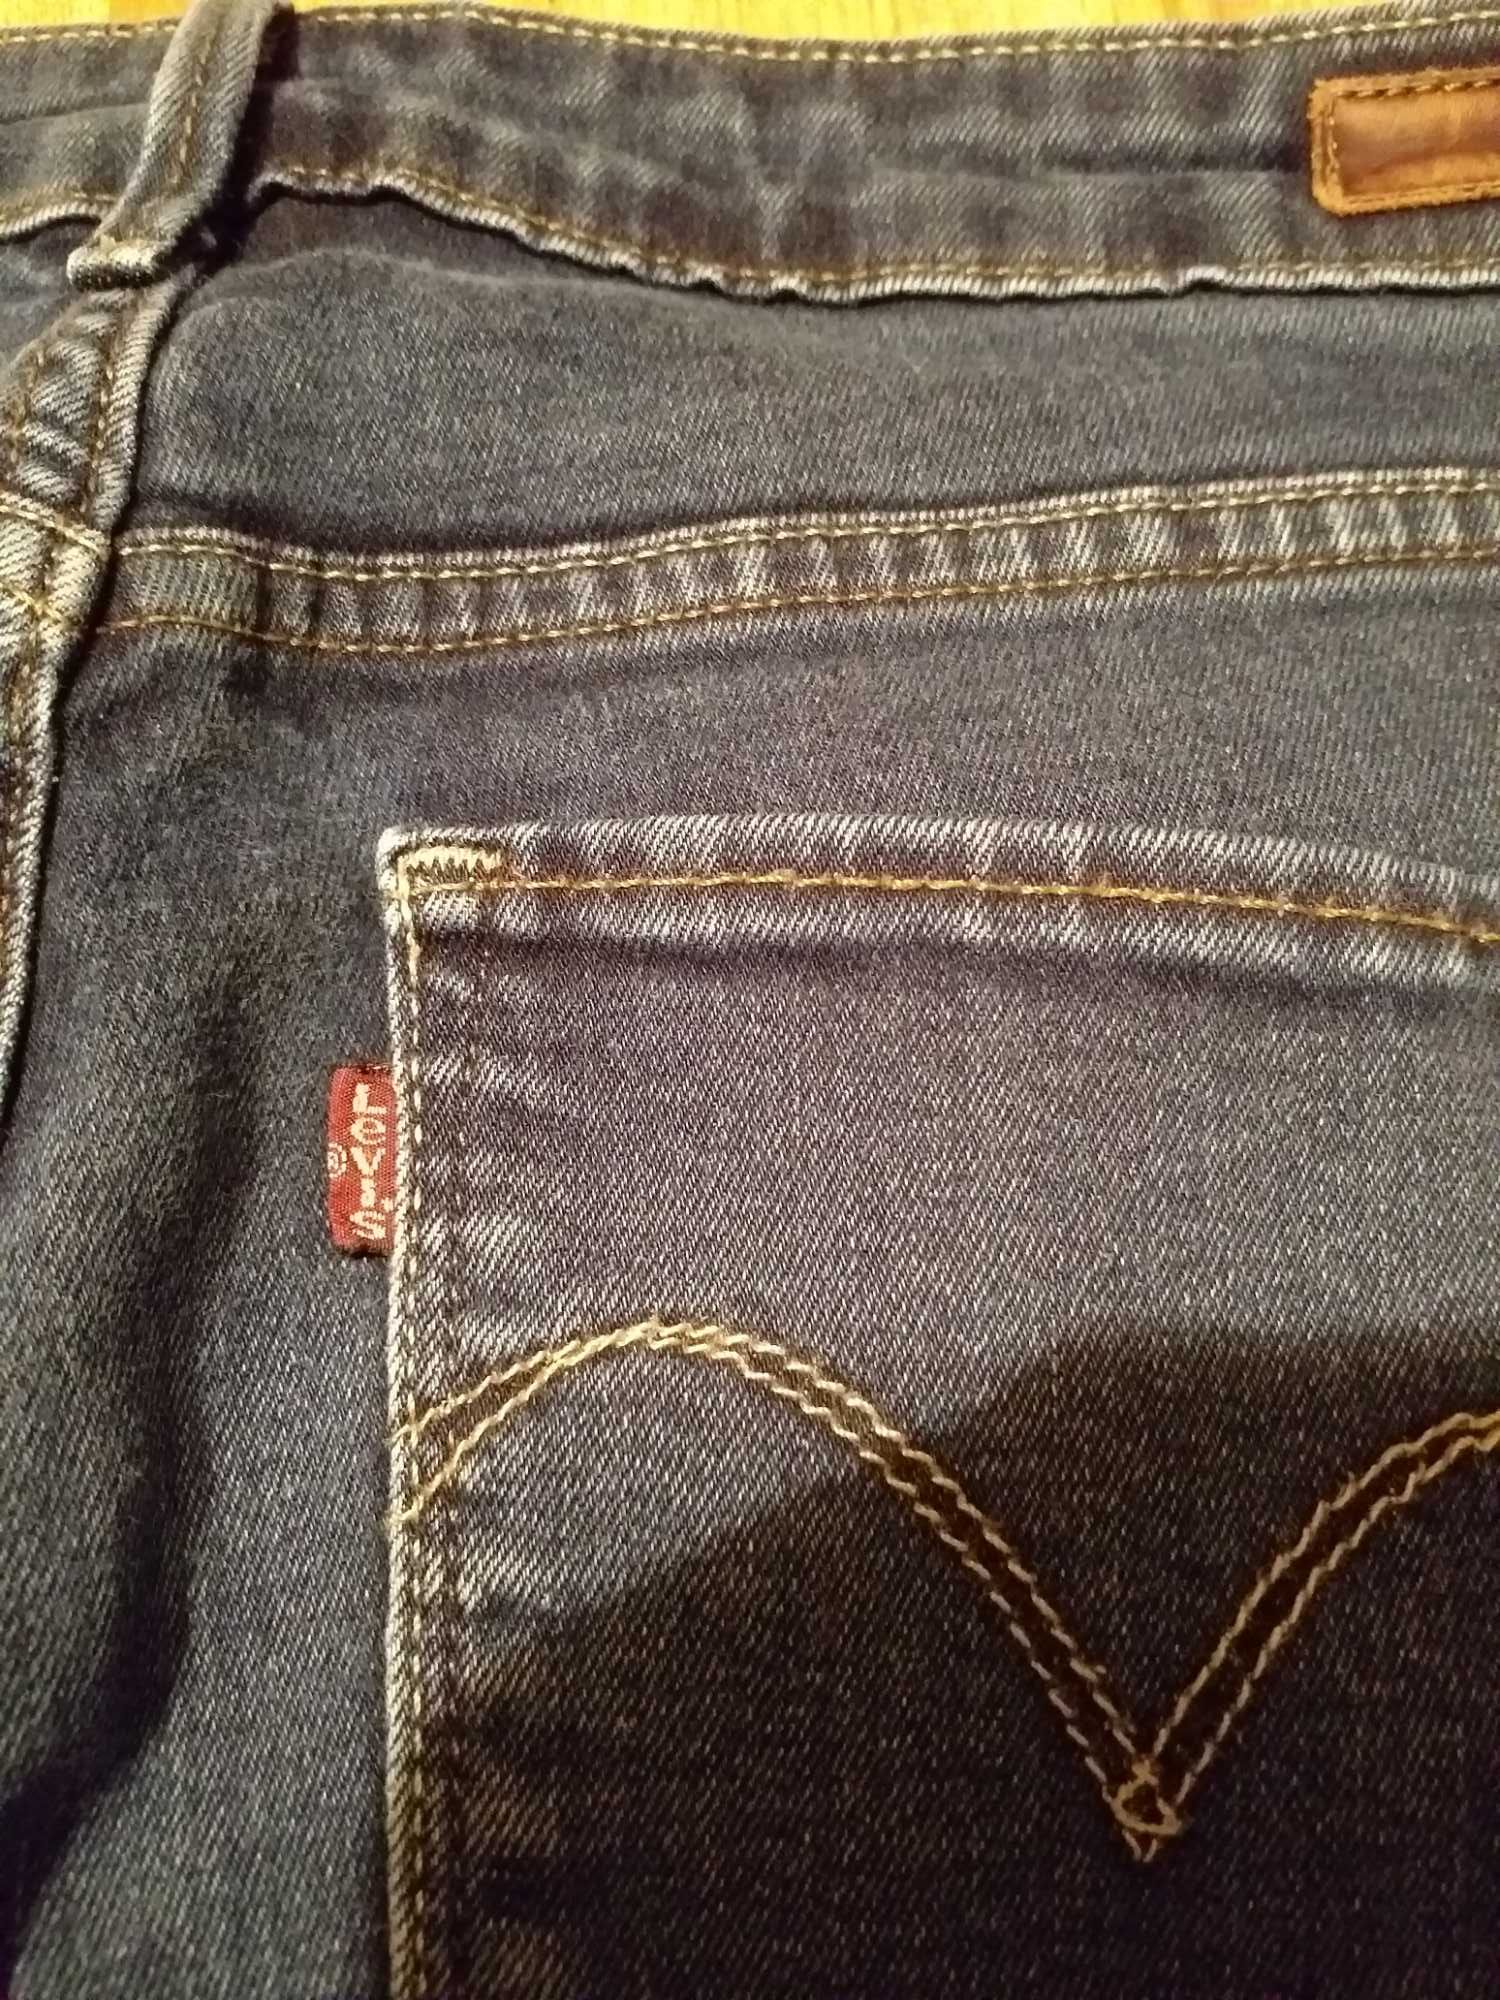 Granatowe jeansy Levis 31, M/L